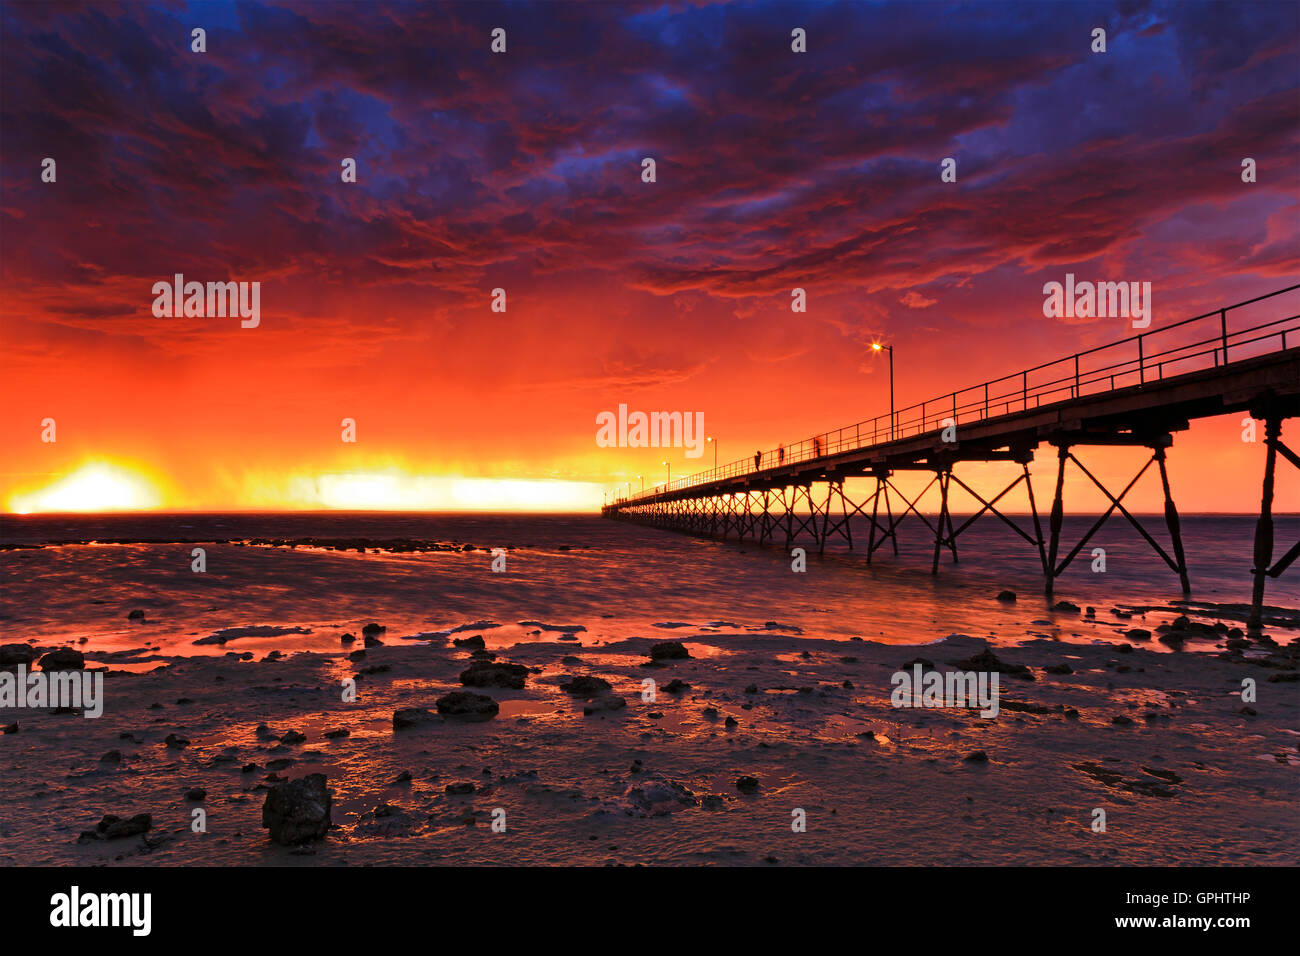 Tempête rouge coucher de soleil sur l'horizon à Ceduna bay sur Grande Baie australienne. Jetée en bois historique en direction d'ouvrir l'eau à marée basse Banque D'Images